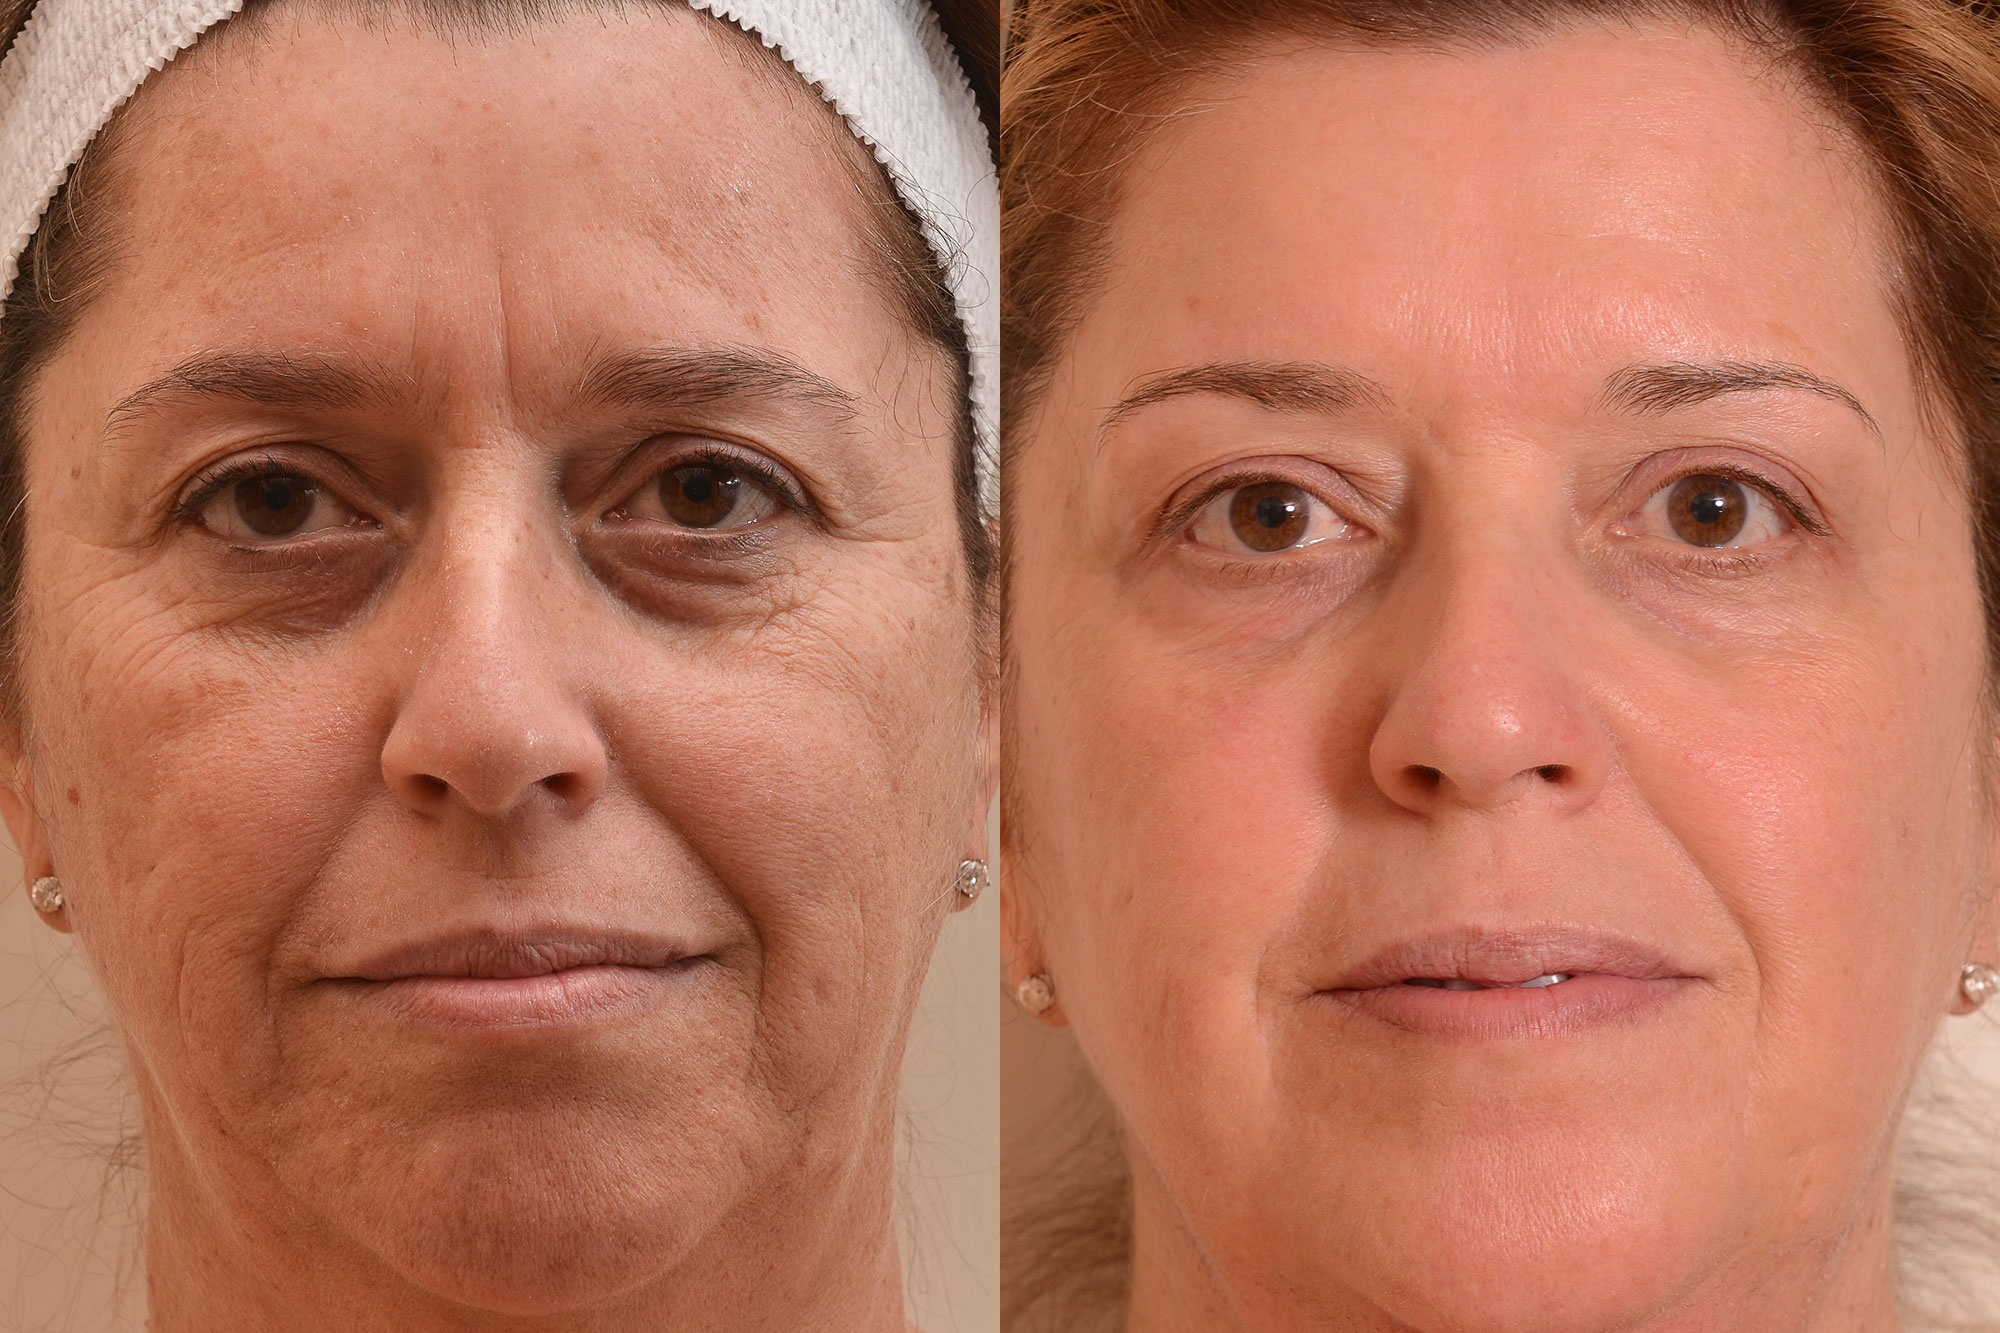 Rf лифтинг результаты. ДМАЕ вокруг глаз мезотерапия. Омоложение лица до и после. Лифтинг лица. Морщины до после.